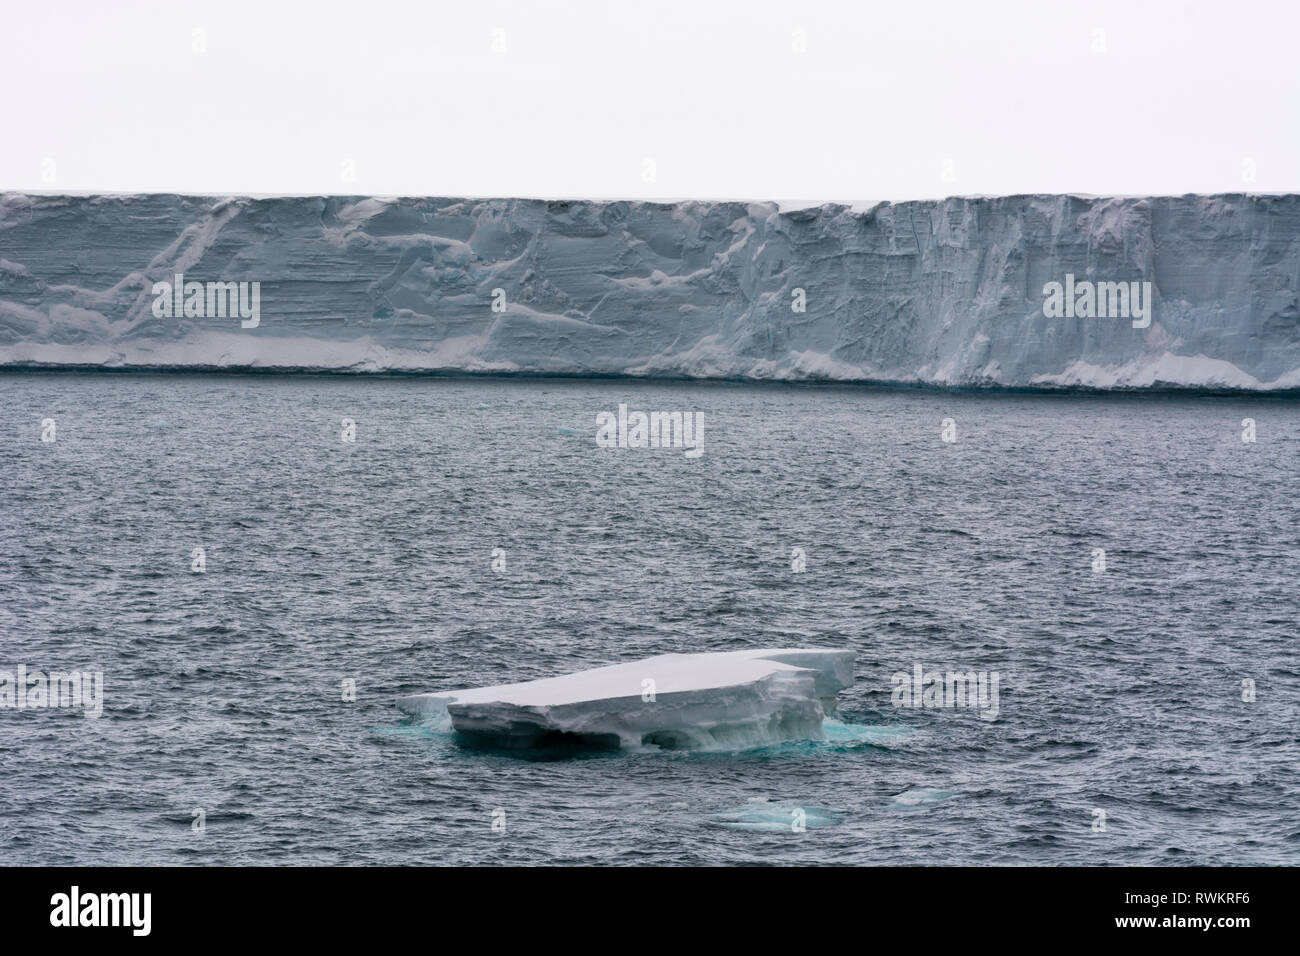 Océan Arctique et calotte glacière, Austfonna, Nordaustlandet Svalbard, Norvège Banque D'Images